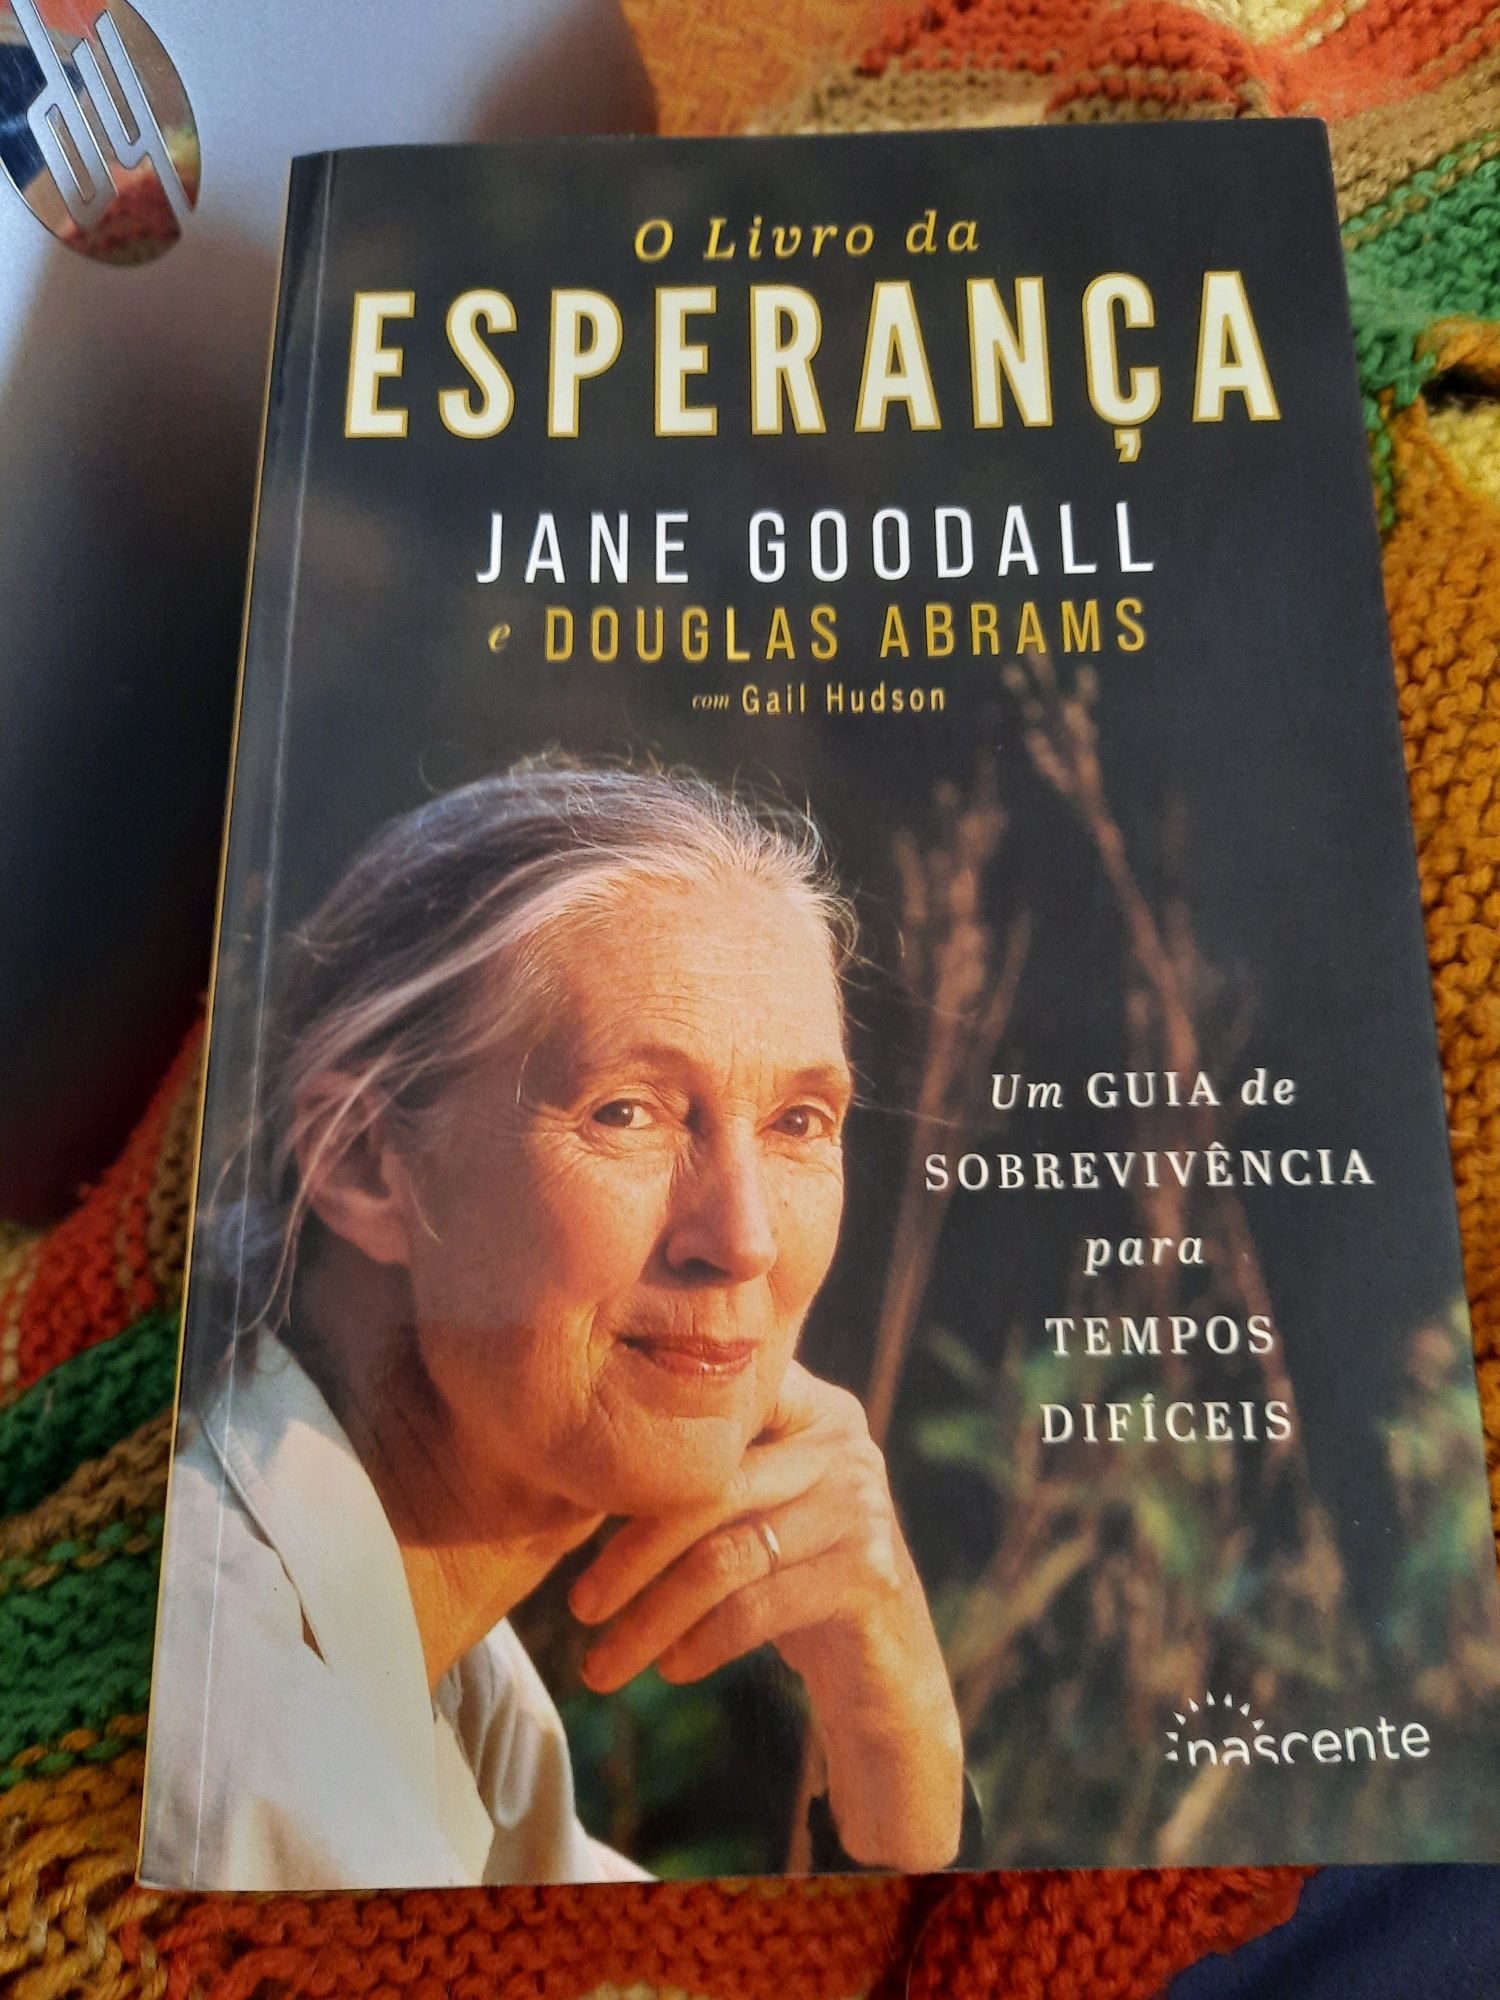 O Livro da Esperança - Jane Goodall
Um guia de sobreviência para tempo